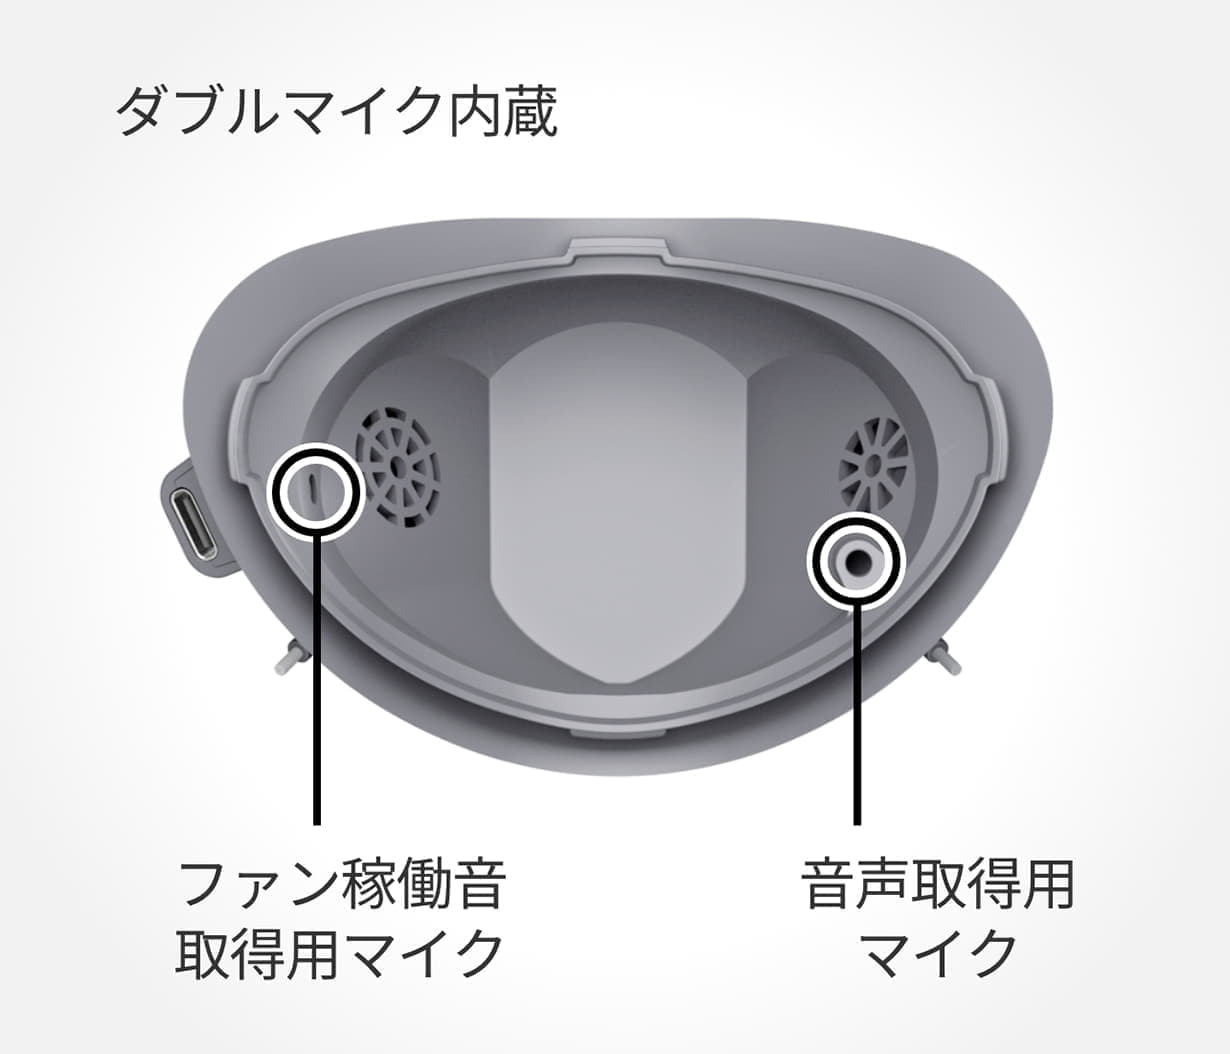 マスク装着型の減音デバイス「Privacy Talk」が10月31日に発売決定_003